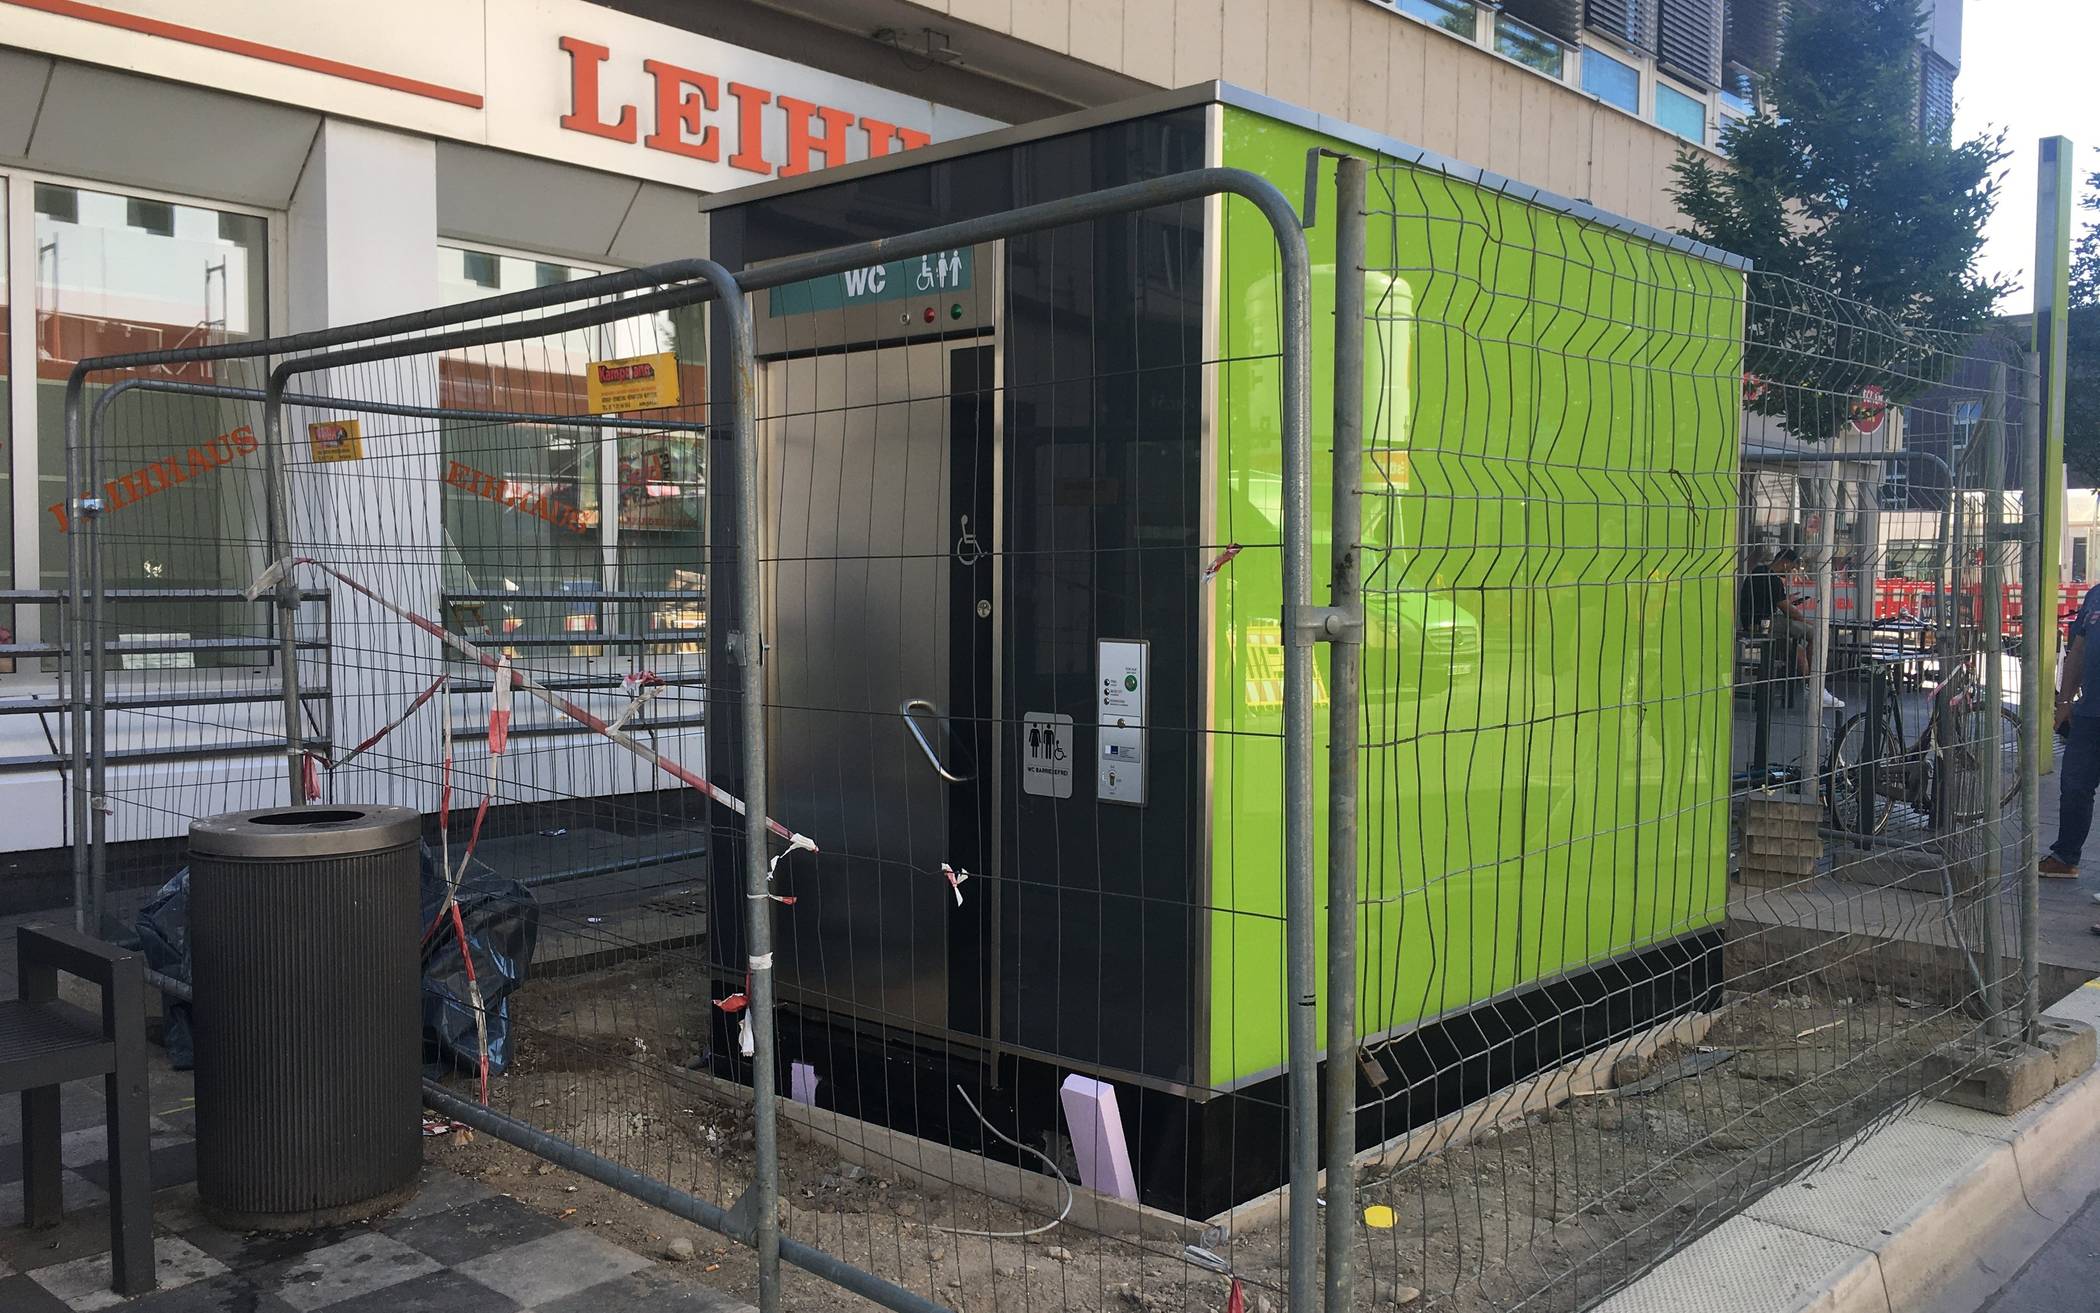  Diese neue grüne Toilettenanlage kann voraussichtlich ab Mitte September genutzt werden. Das Amt für Gebäudemanagement hat auf Höhe der Friedrich-Ebert-Straße 54 eine behindertengerechte und Vandalismus hemmende City-Toilettenanlage aufgestellt. 